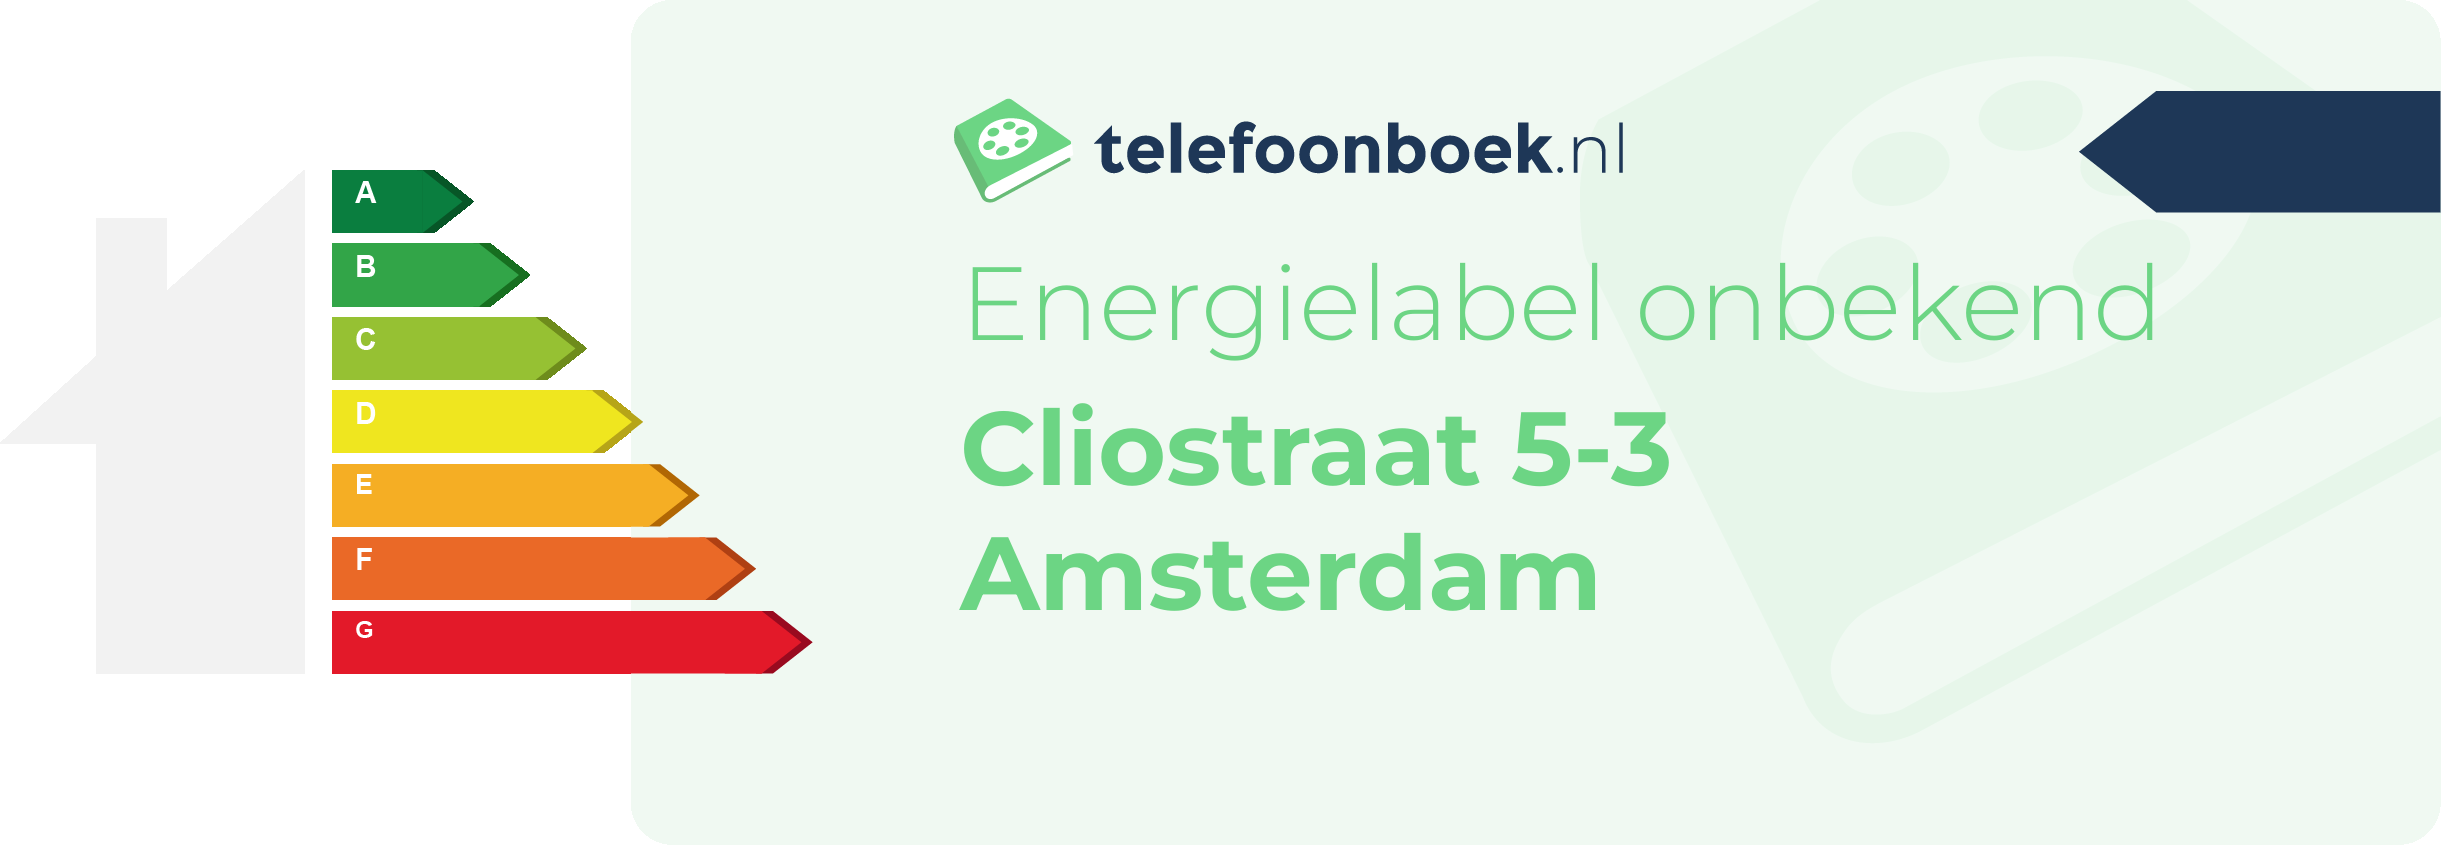 Energielabel Cliostraat 5-3 Amsterdam